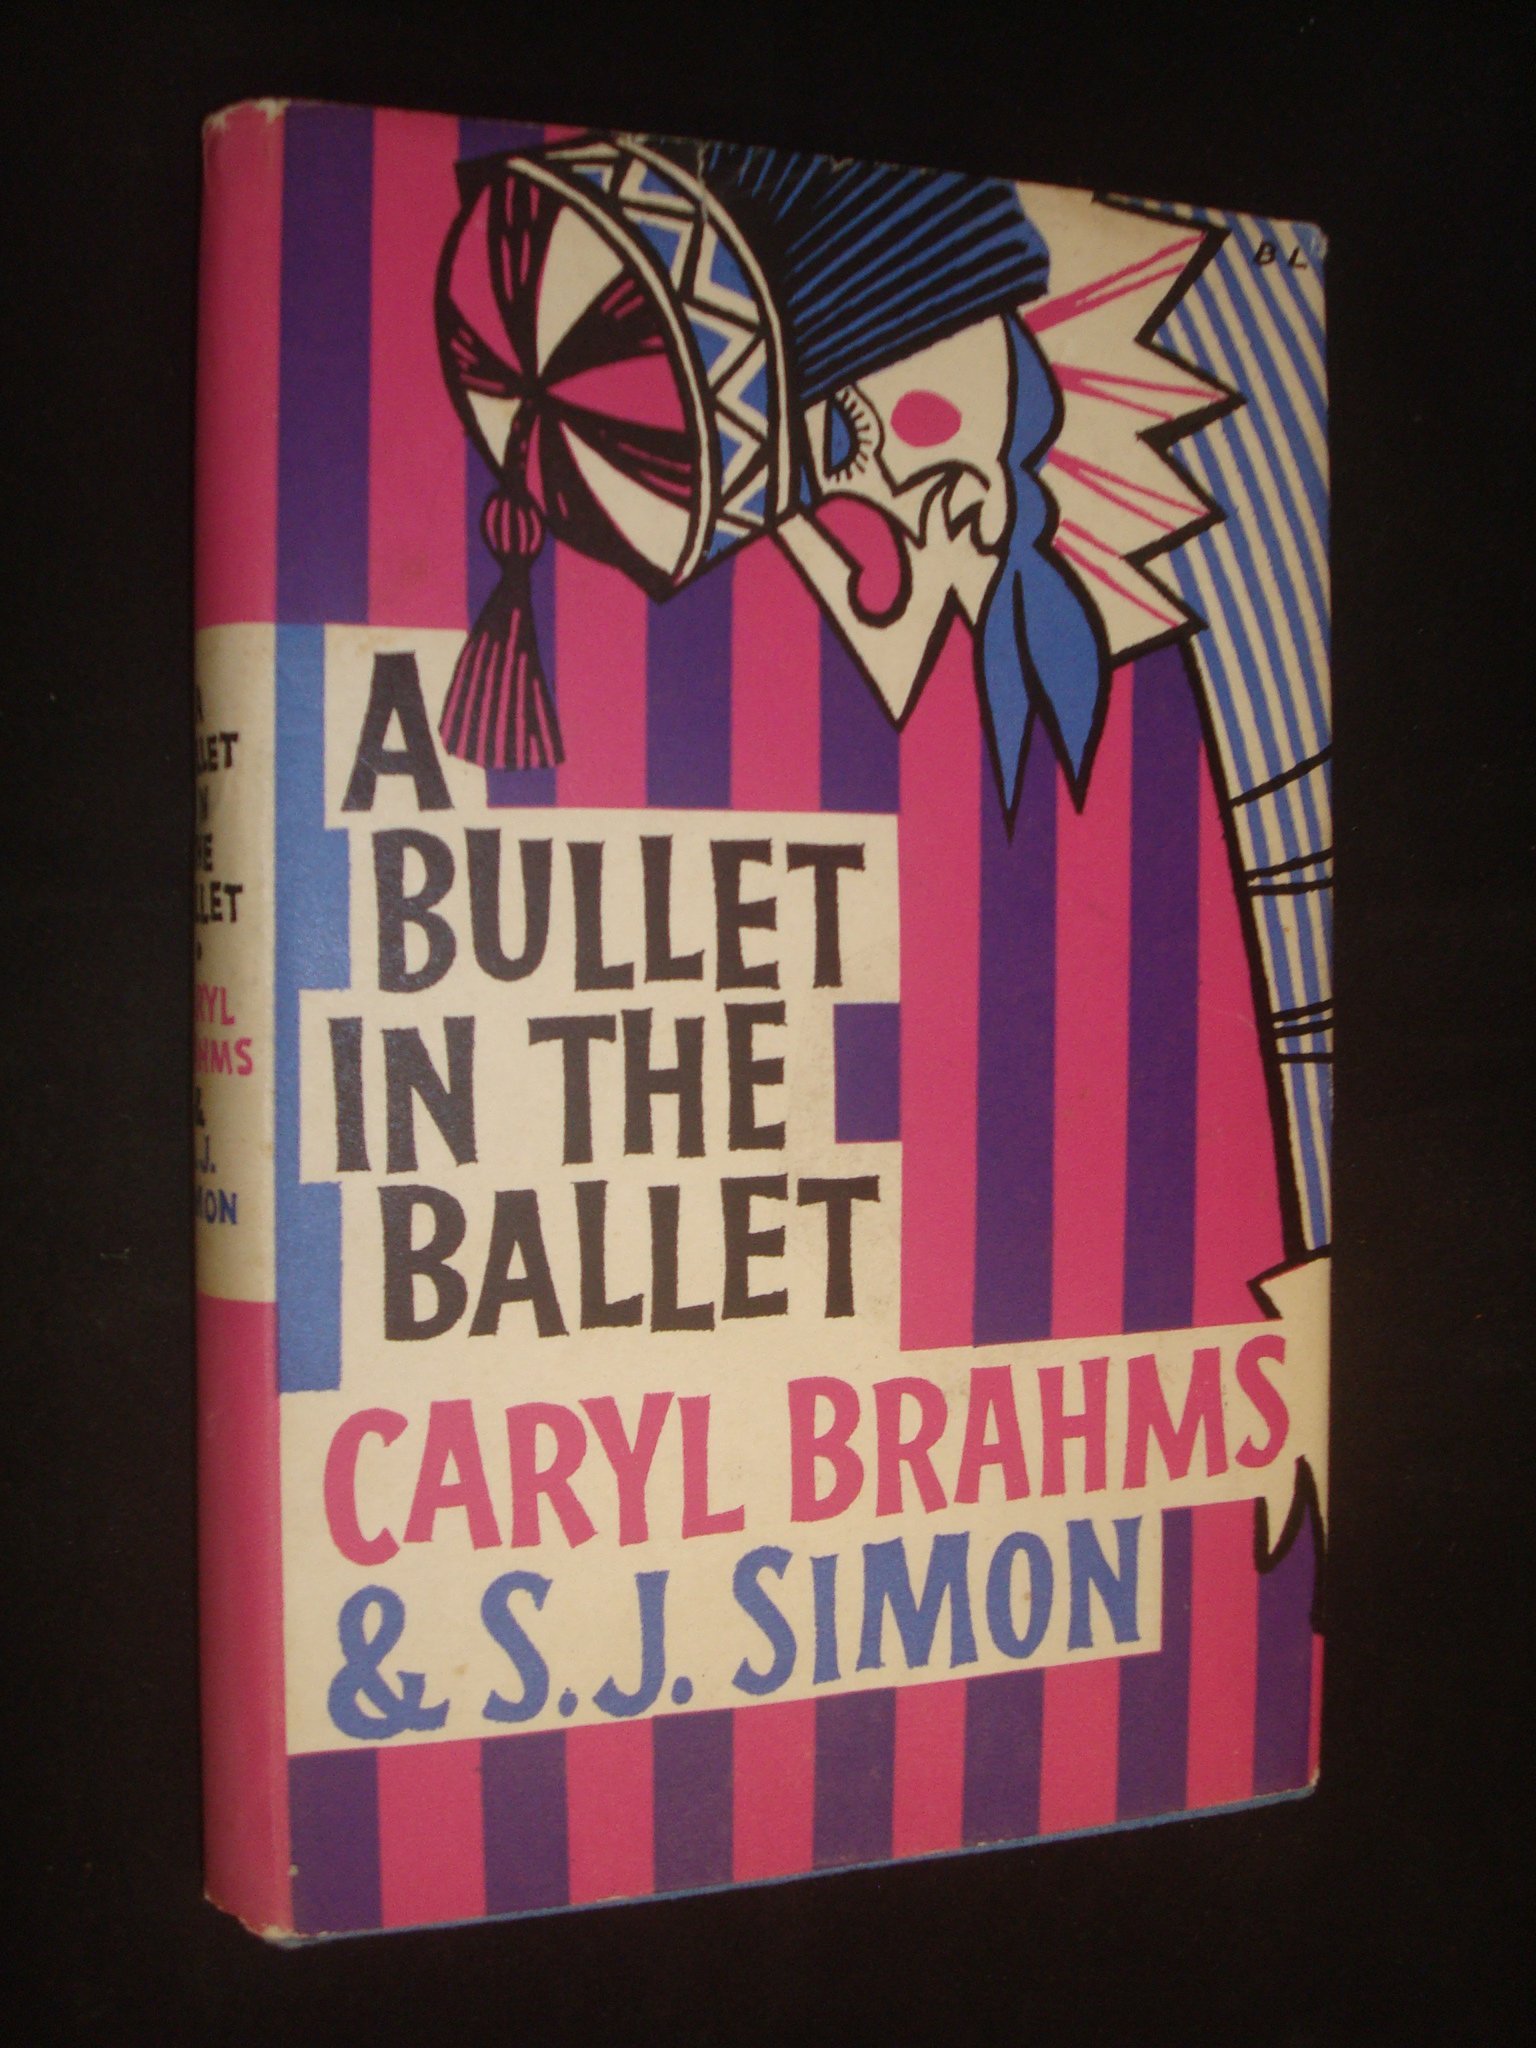 Bullet in the ballet.jpg